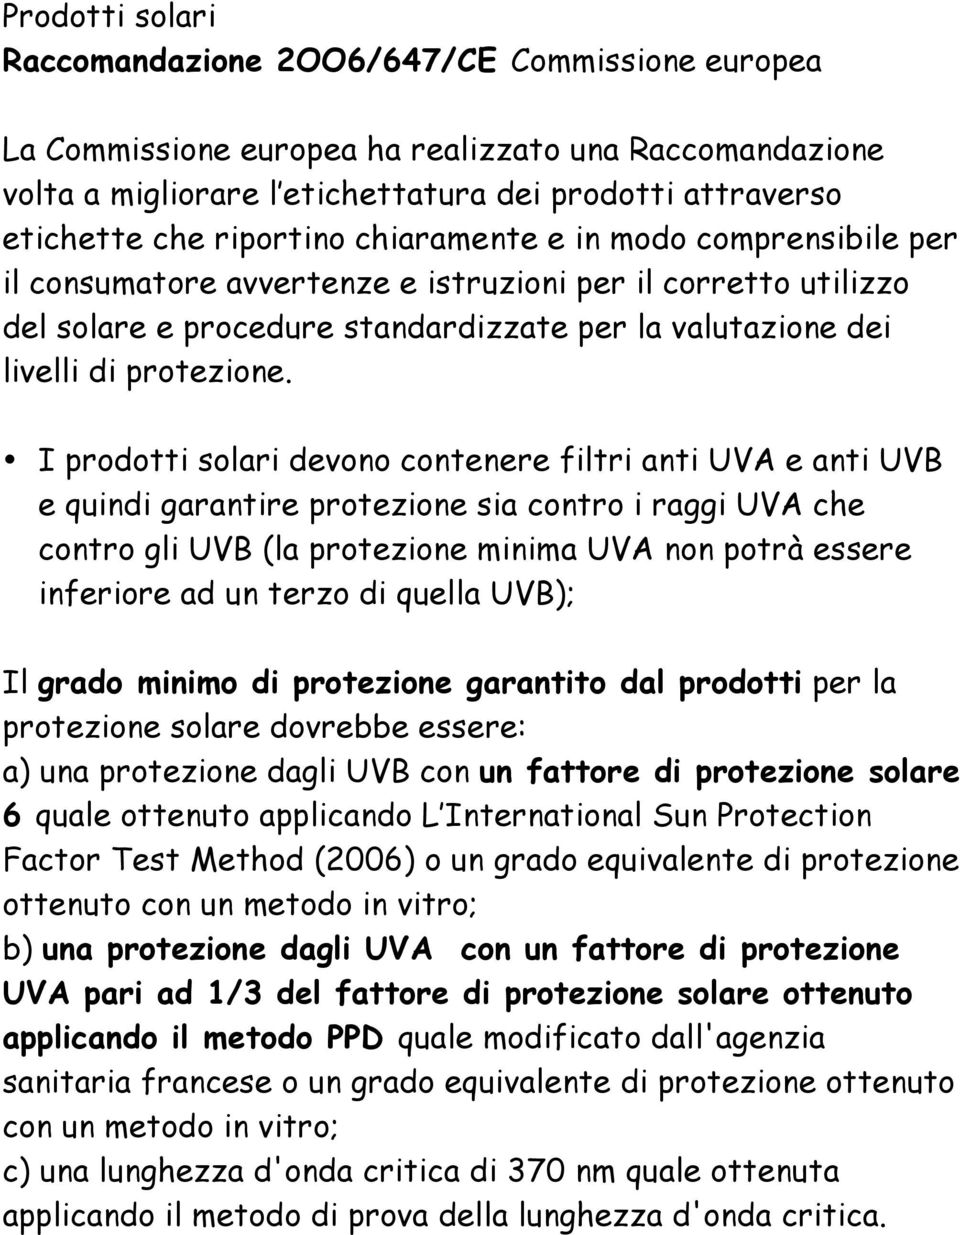 I prodotti solari devono contenere filtri anti UVA e anti UVB e quindi garantire protezione sia contro i raggi UVA che contro gli UVB (la protezione minima UVA non potrà essere inferiore ad un terzo